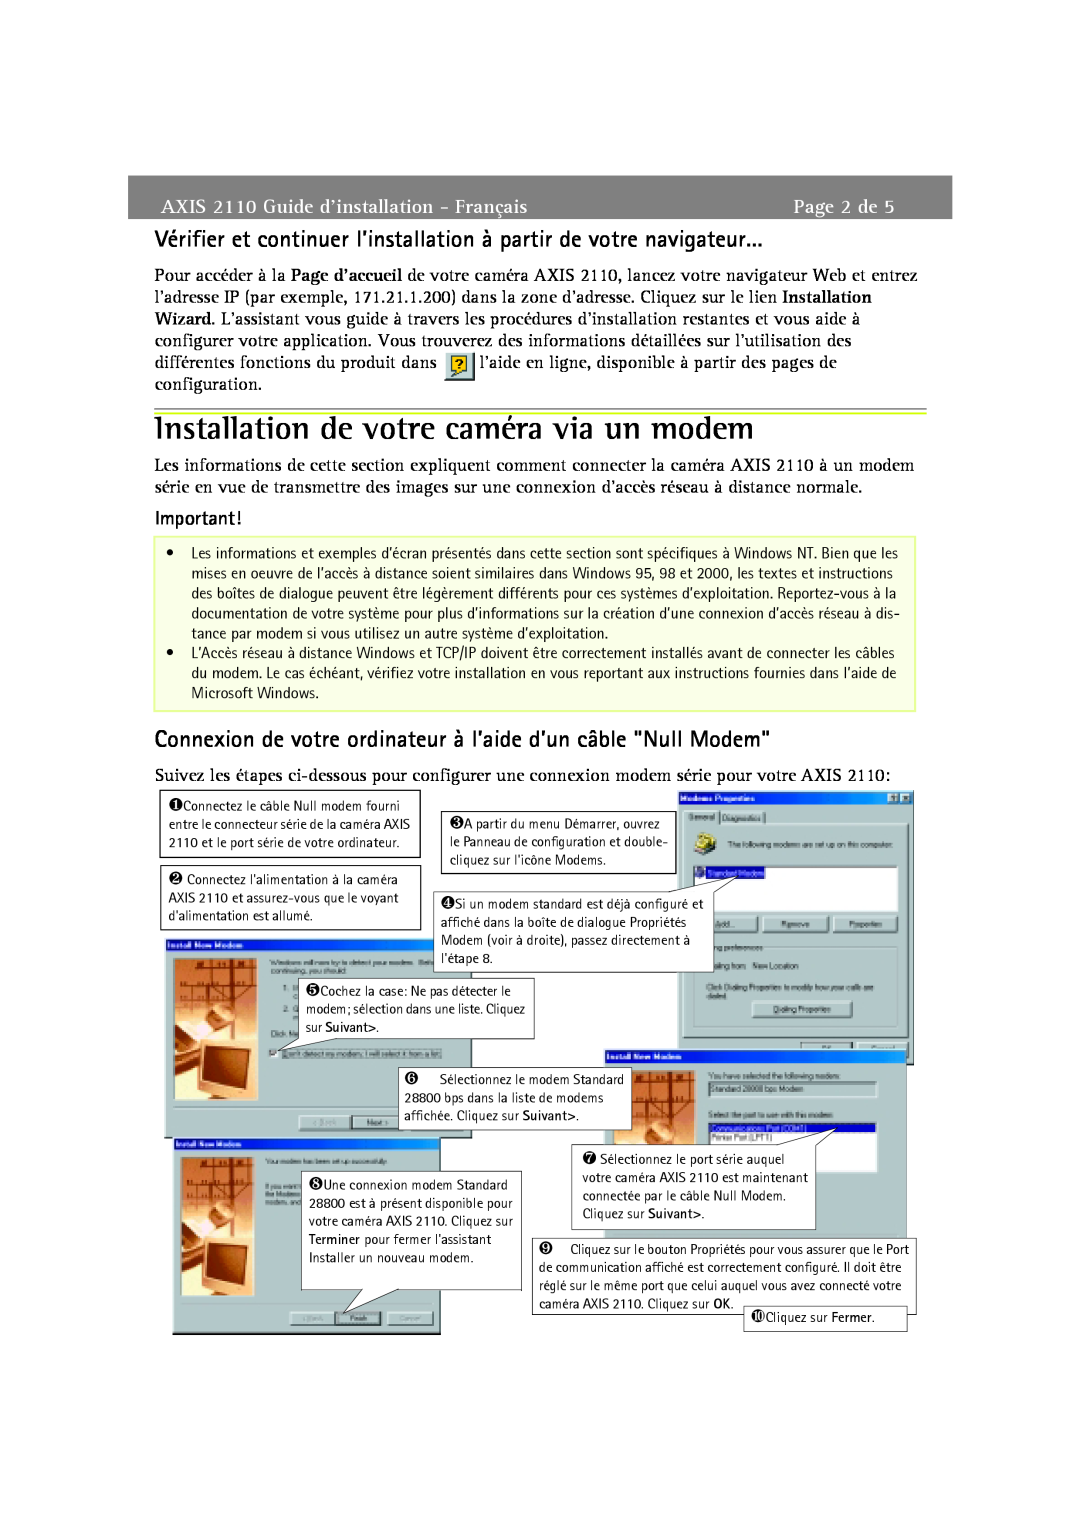 Axis Communications Installation de votre caméra via un modem, Page 2 de, AXIS 2110 Guide d’installation - Français 